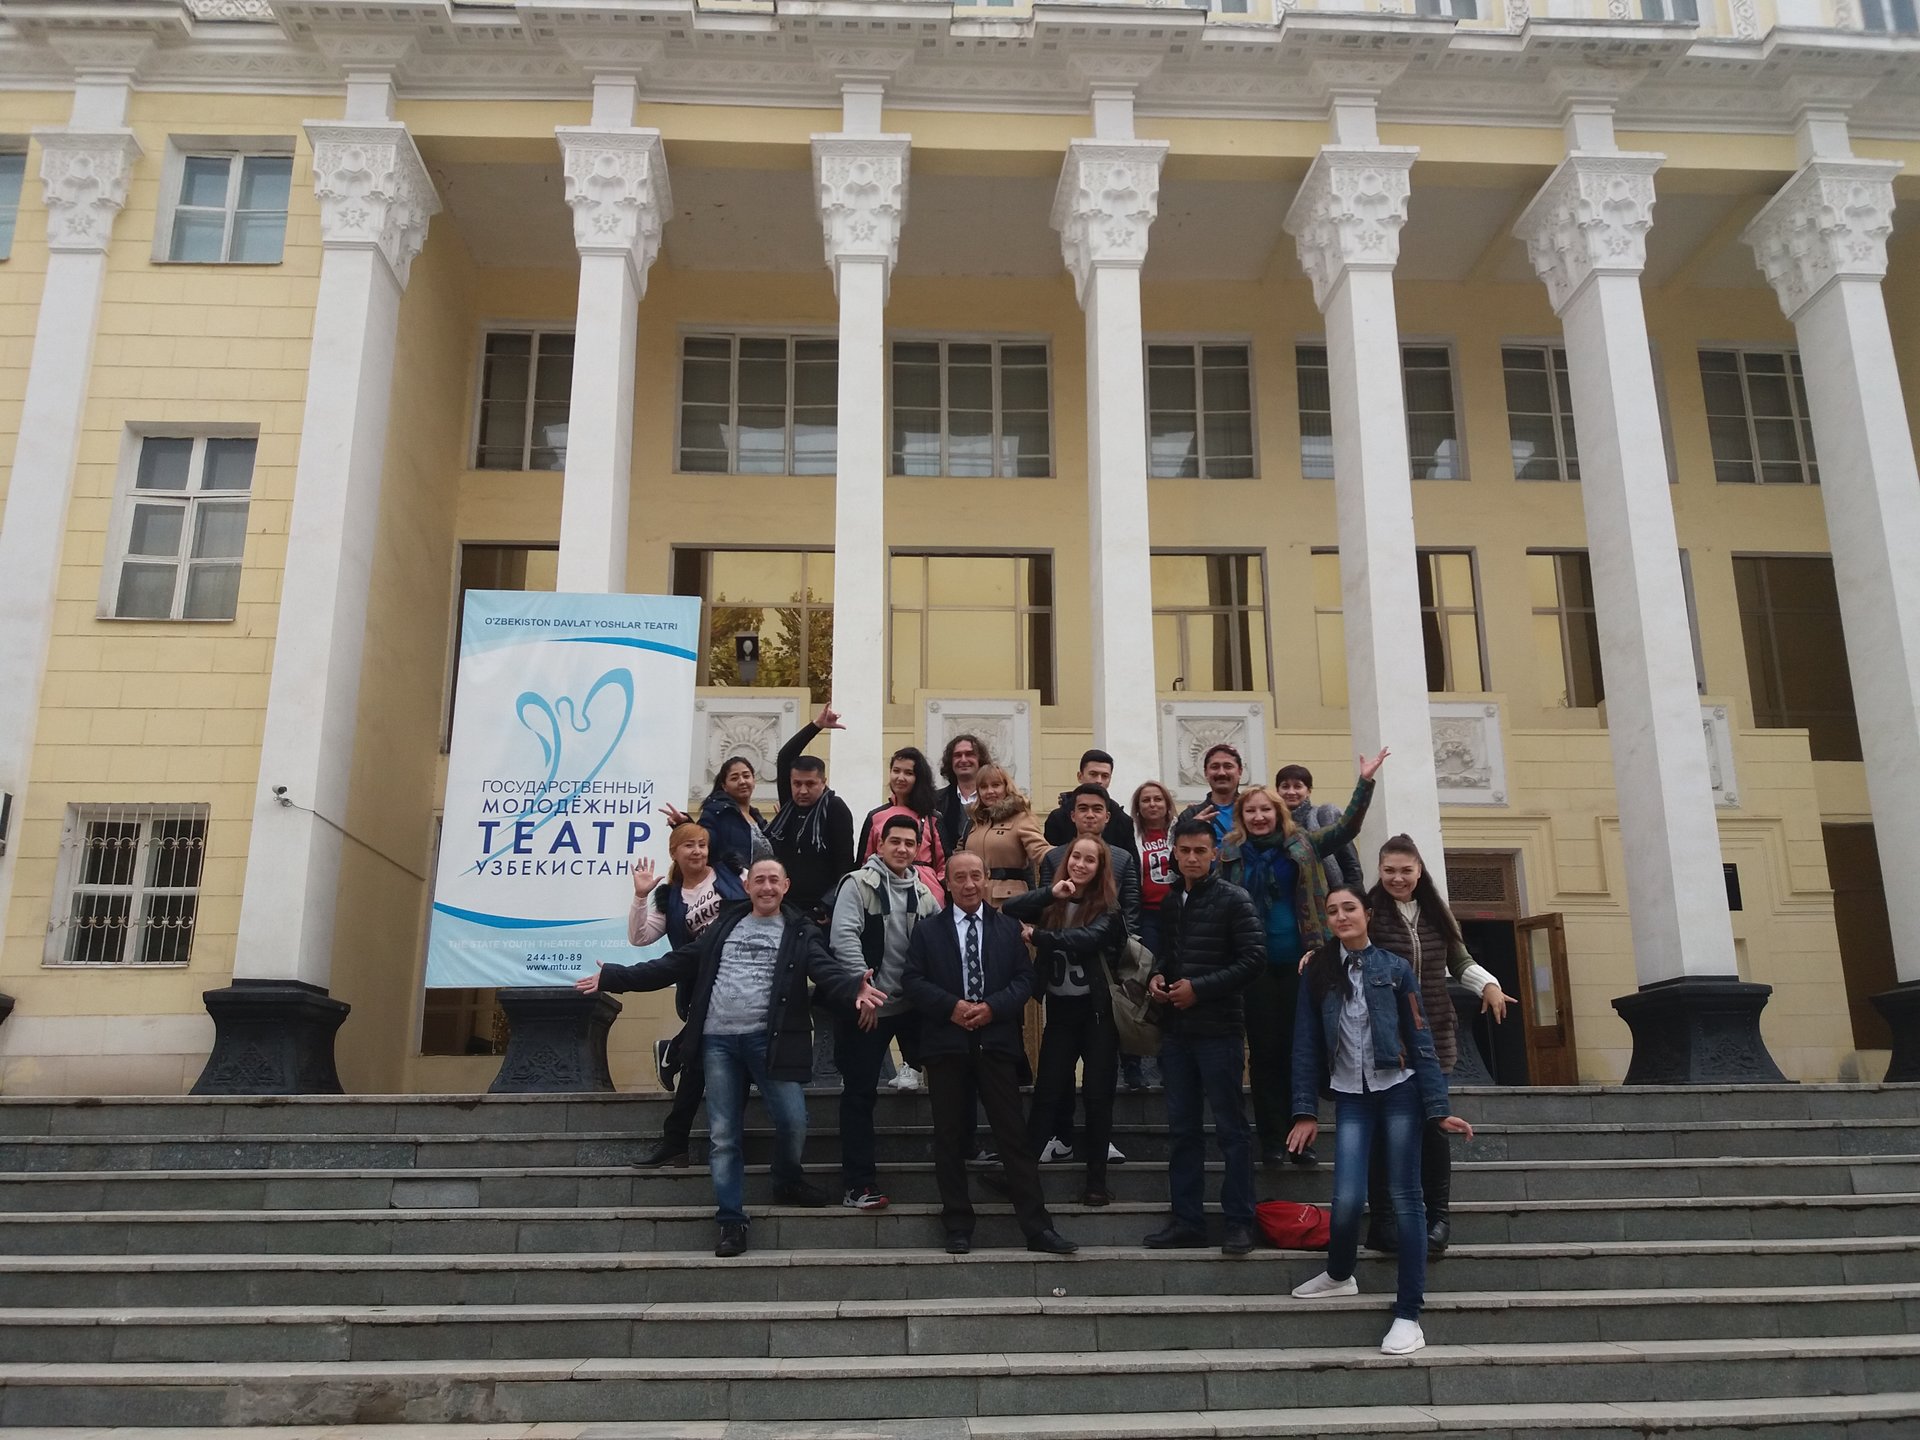 Гастроли в г.Ташкенте 30-31 октября 2018